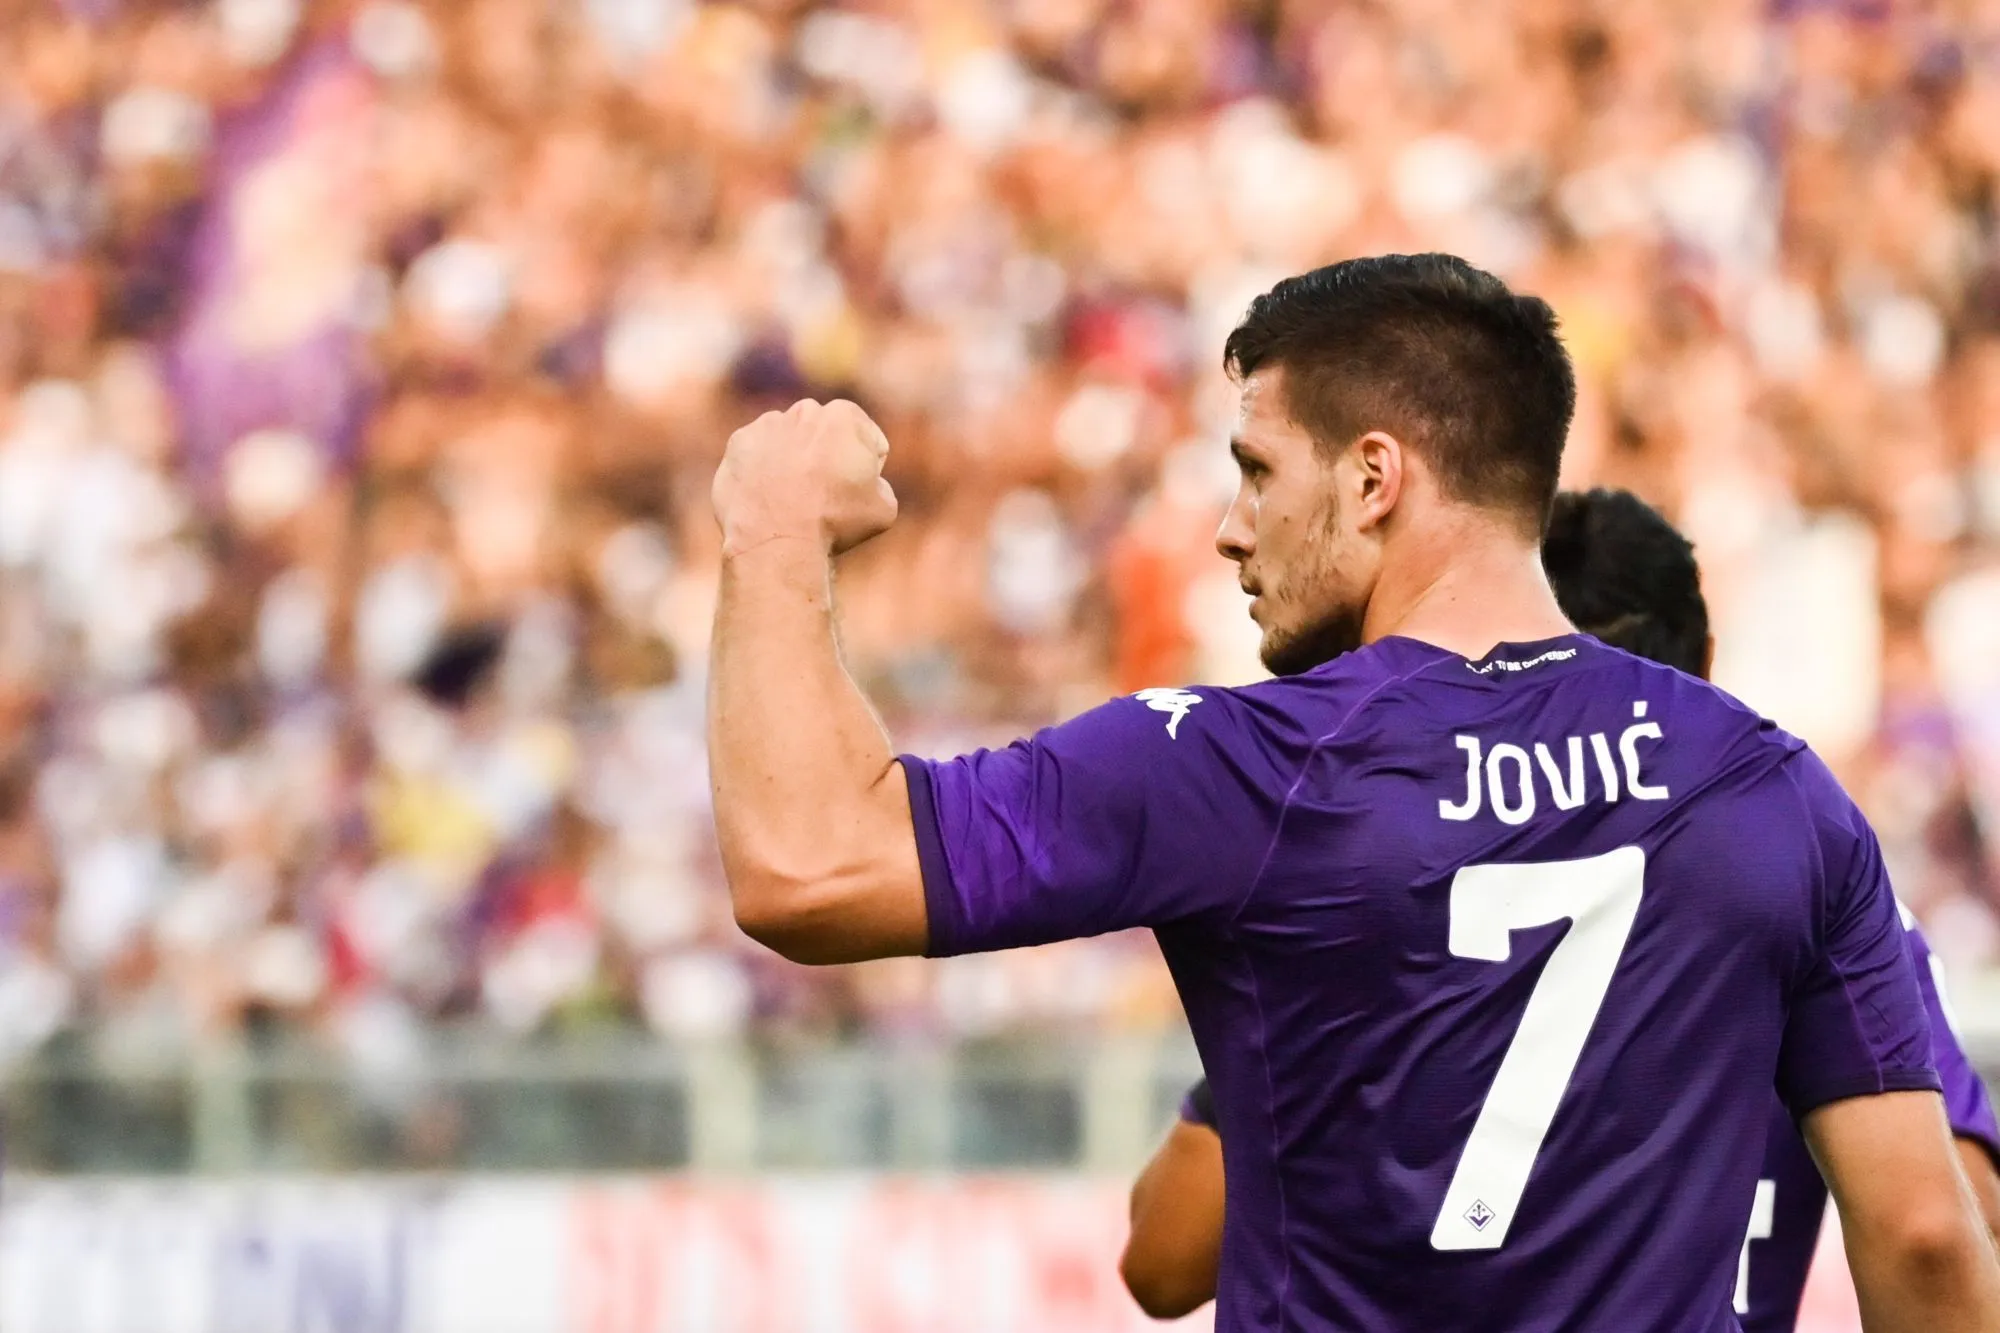 Pronostic Atalanta Bergame Fiorentina : Analyse, cotes et prono du match de Serie A